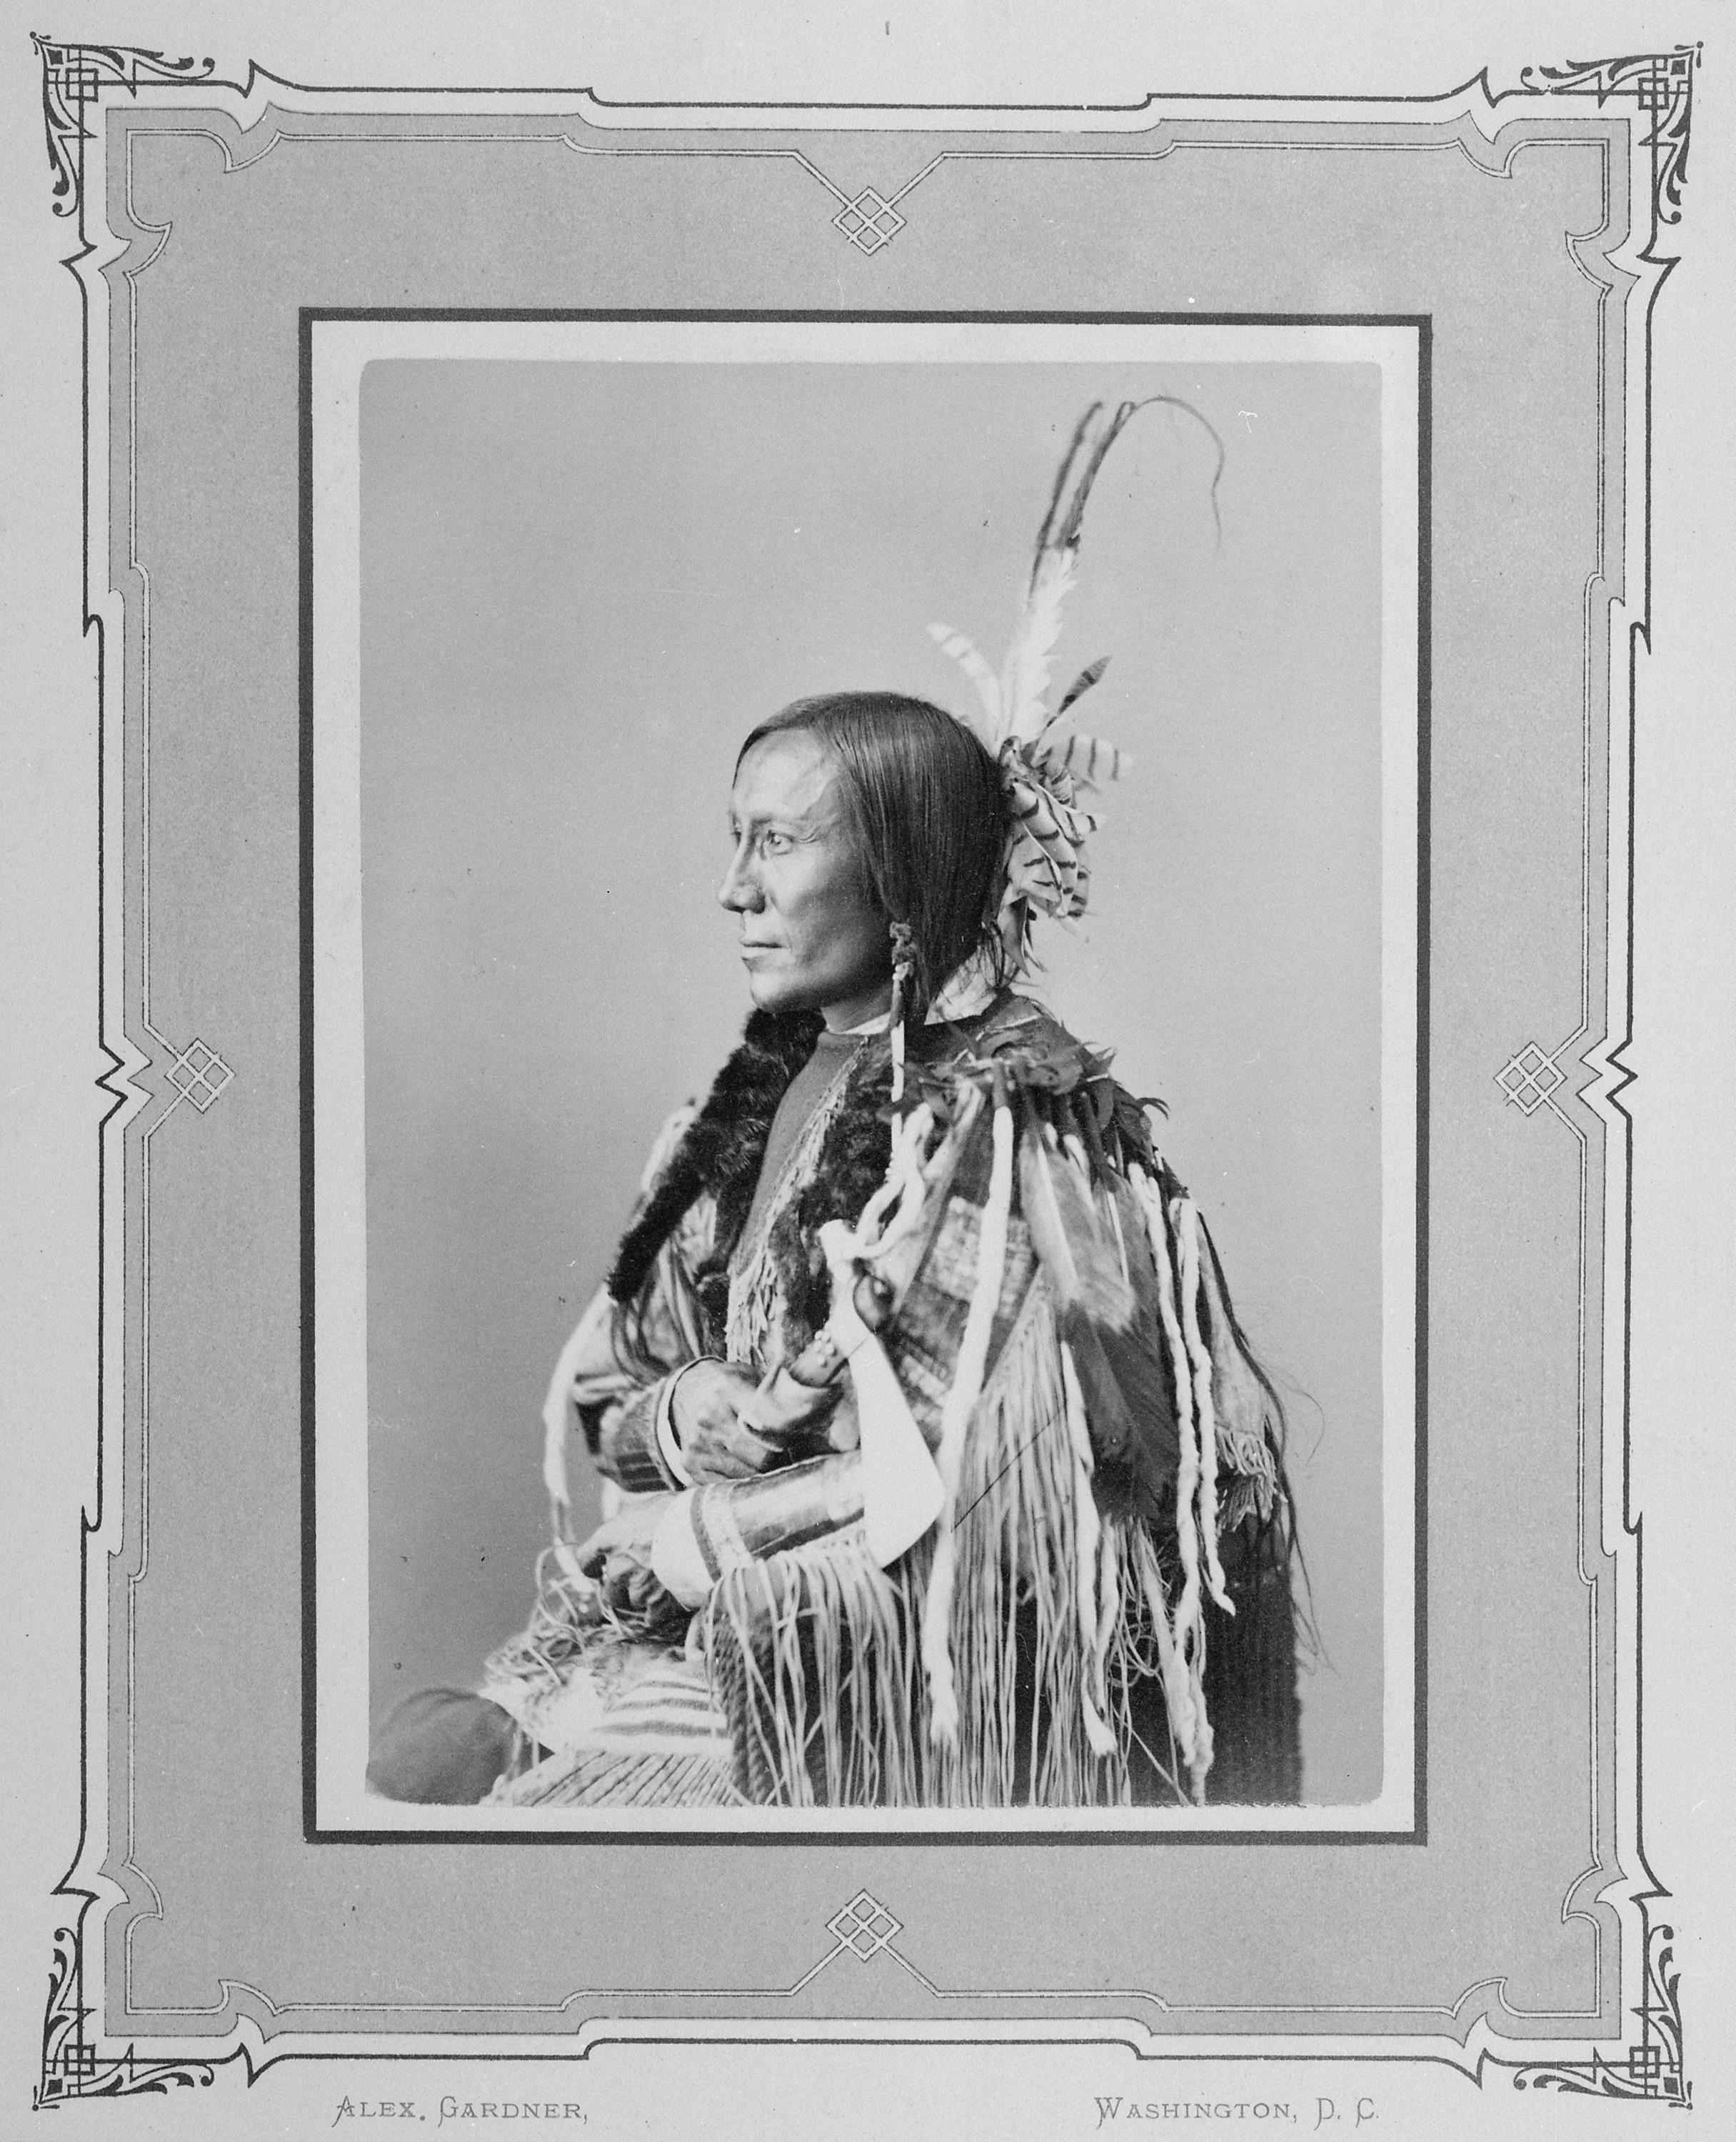 Bulls Ghost-Tah-Tun-Ka-We-Nah-Hi. Yanctonai Sioux, 1872 - NARA - 519016